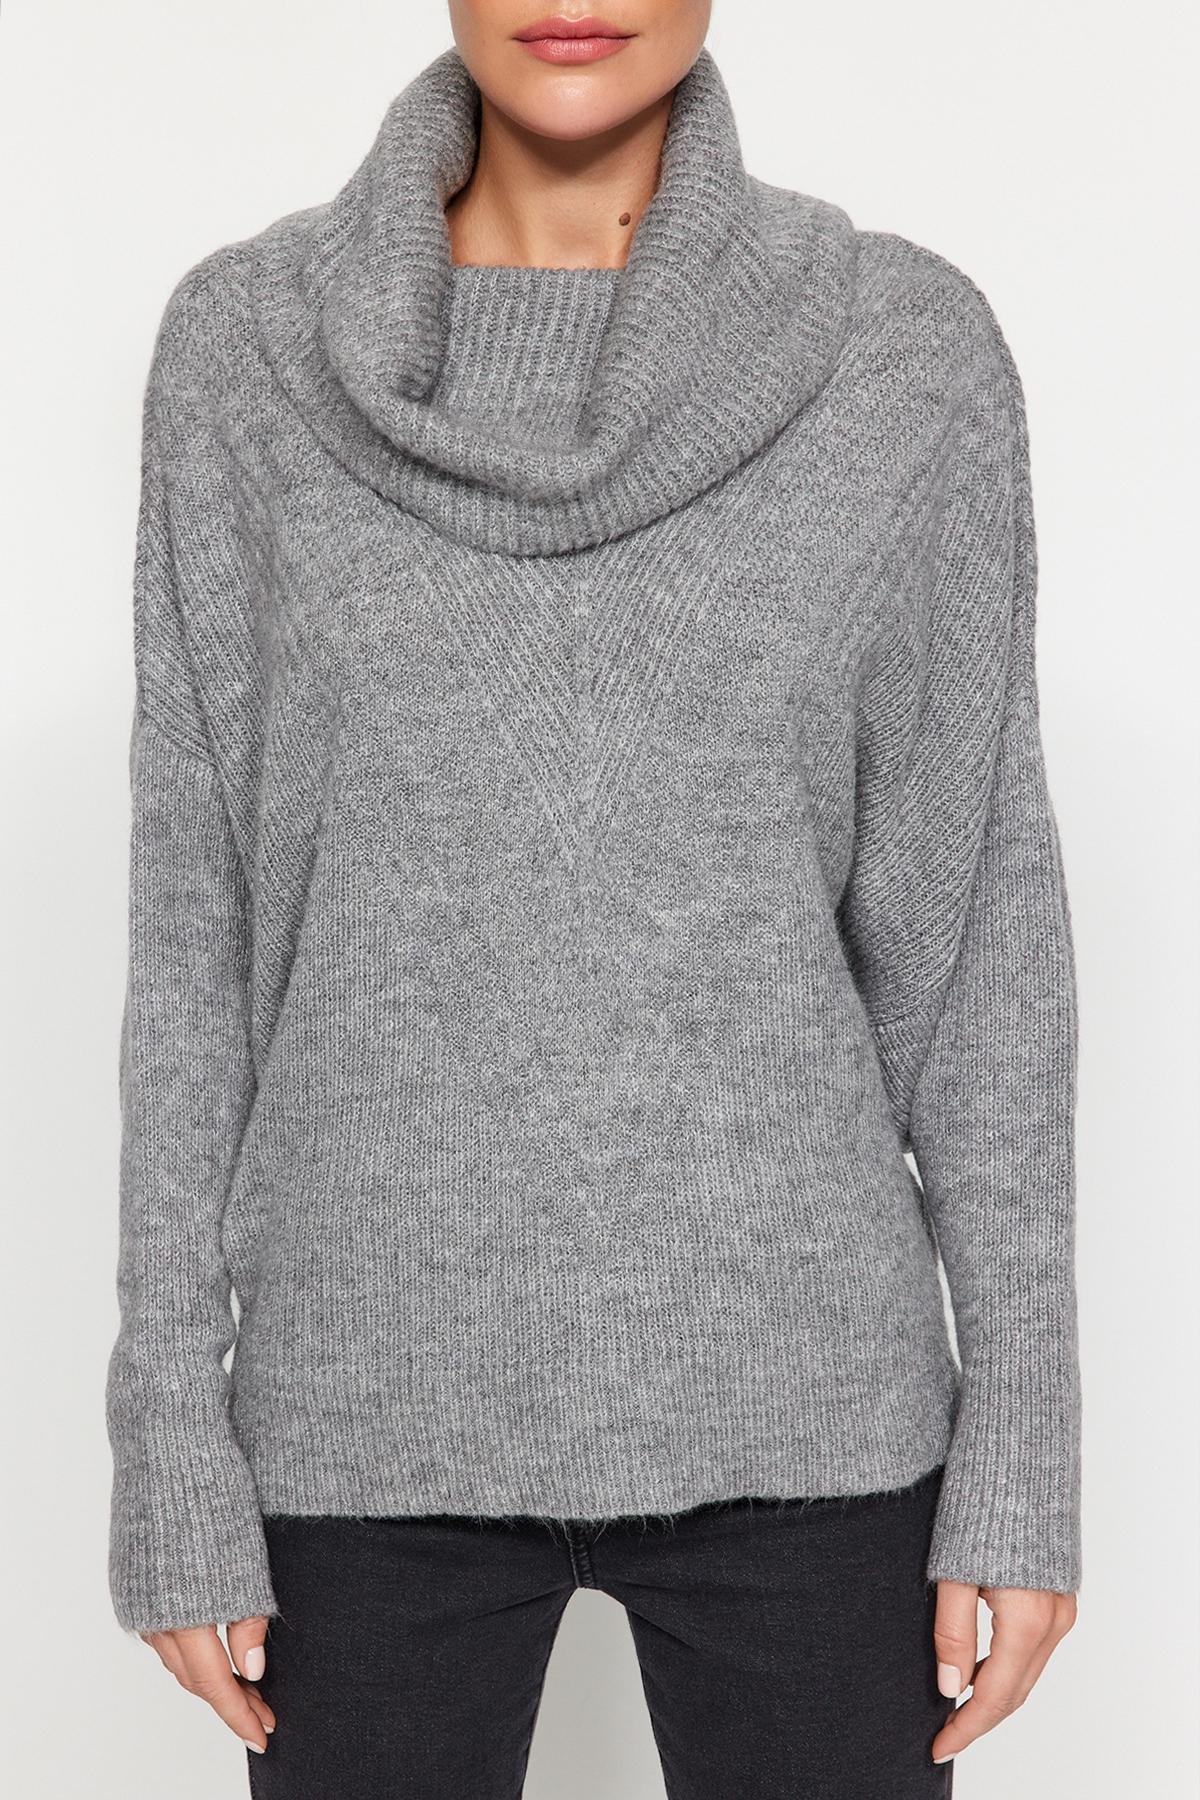 Trendyol - Grey Turtleneck Knitwear Sweater